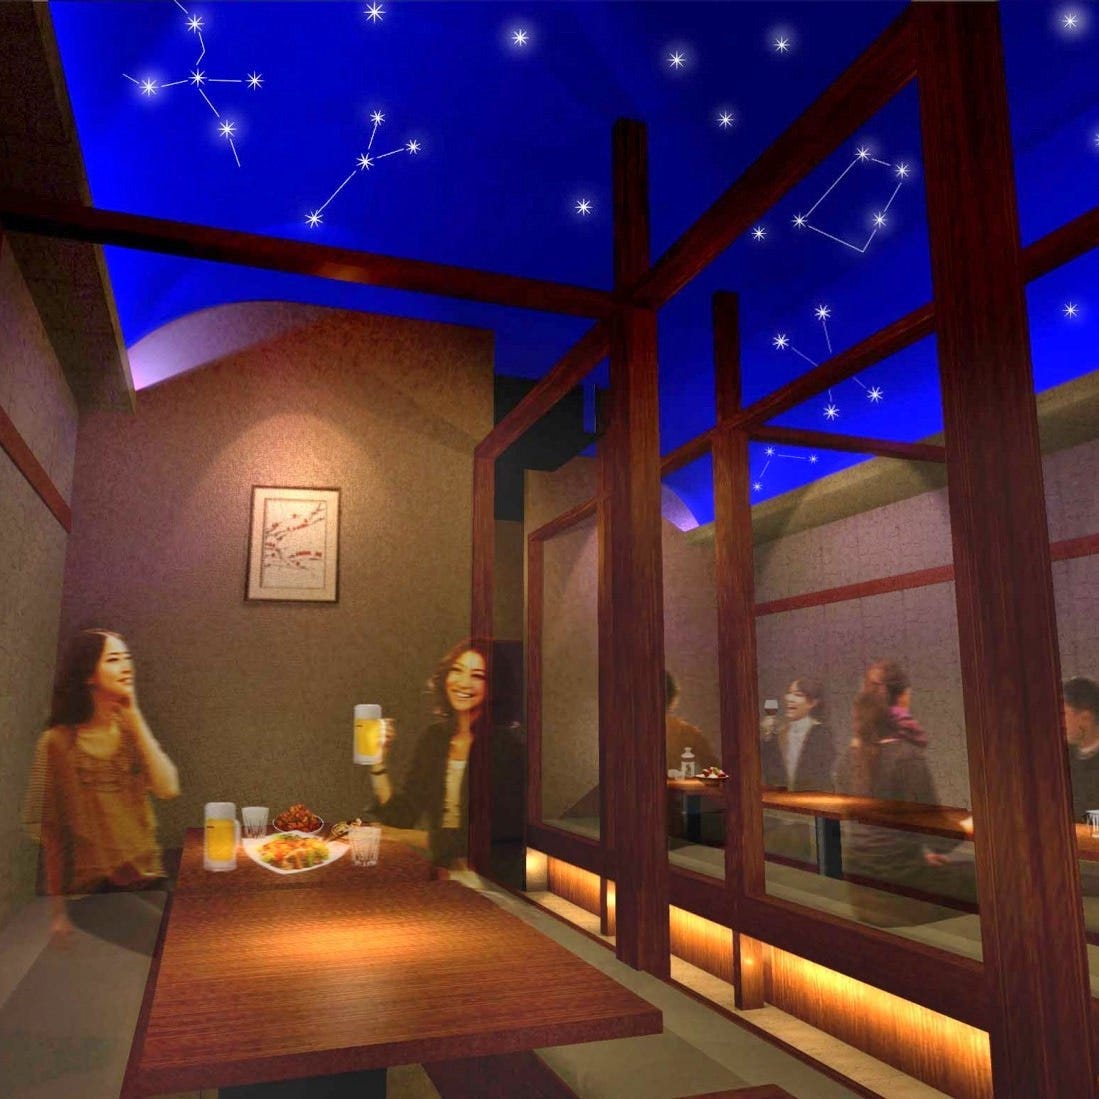 完全个室居酒屋星夜の宴新宿本店照片 新宿 居酒屋 Gurunavi 日本美食餐厅指南